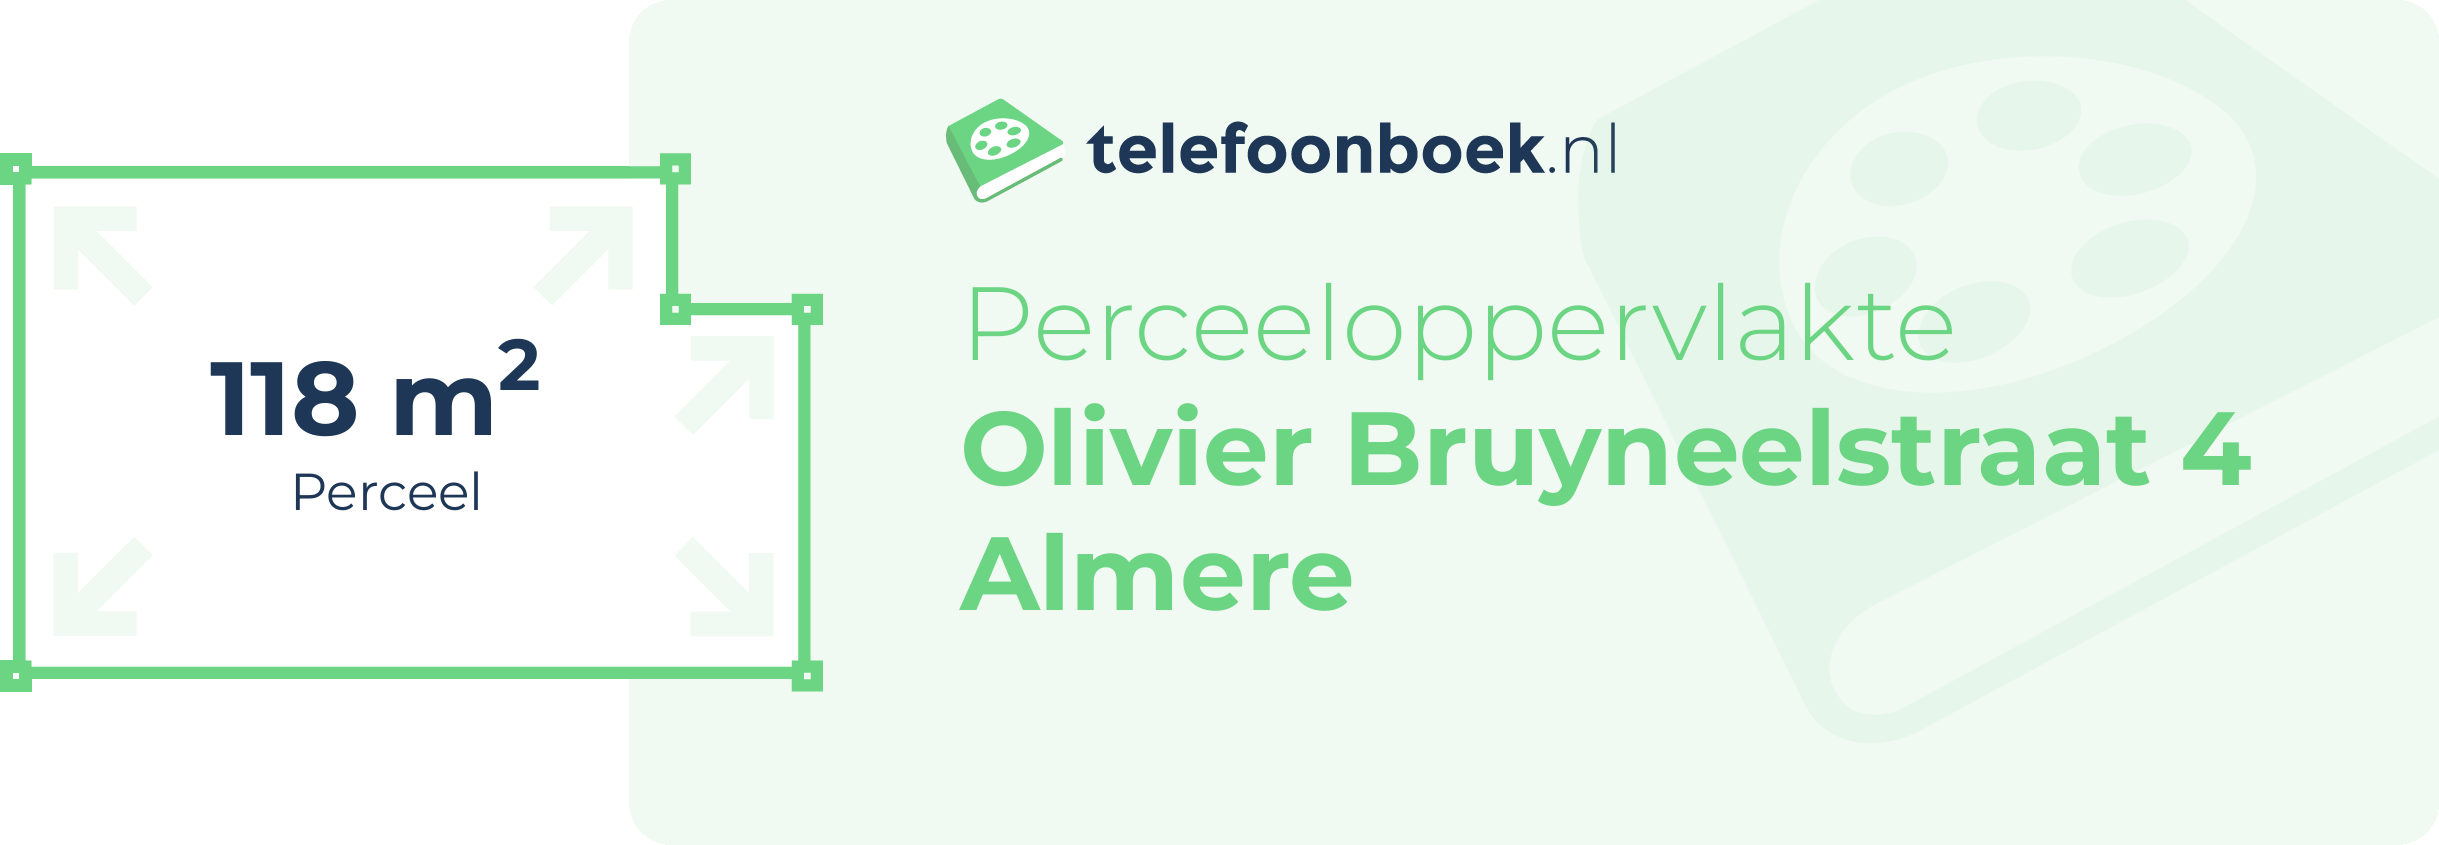 Perceeloppervlakte Olivier Bruyneelstraat 4 Almere